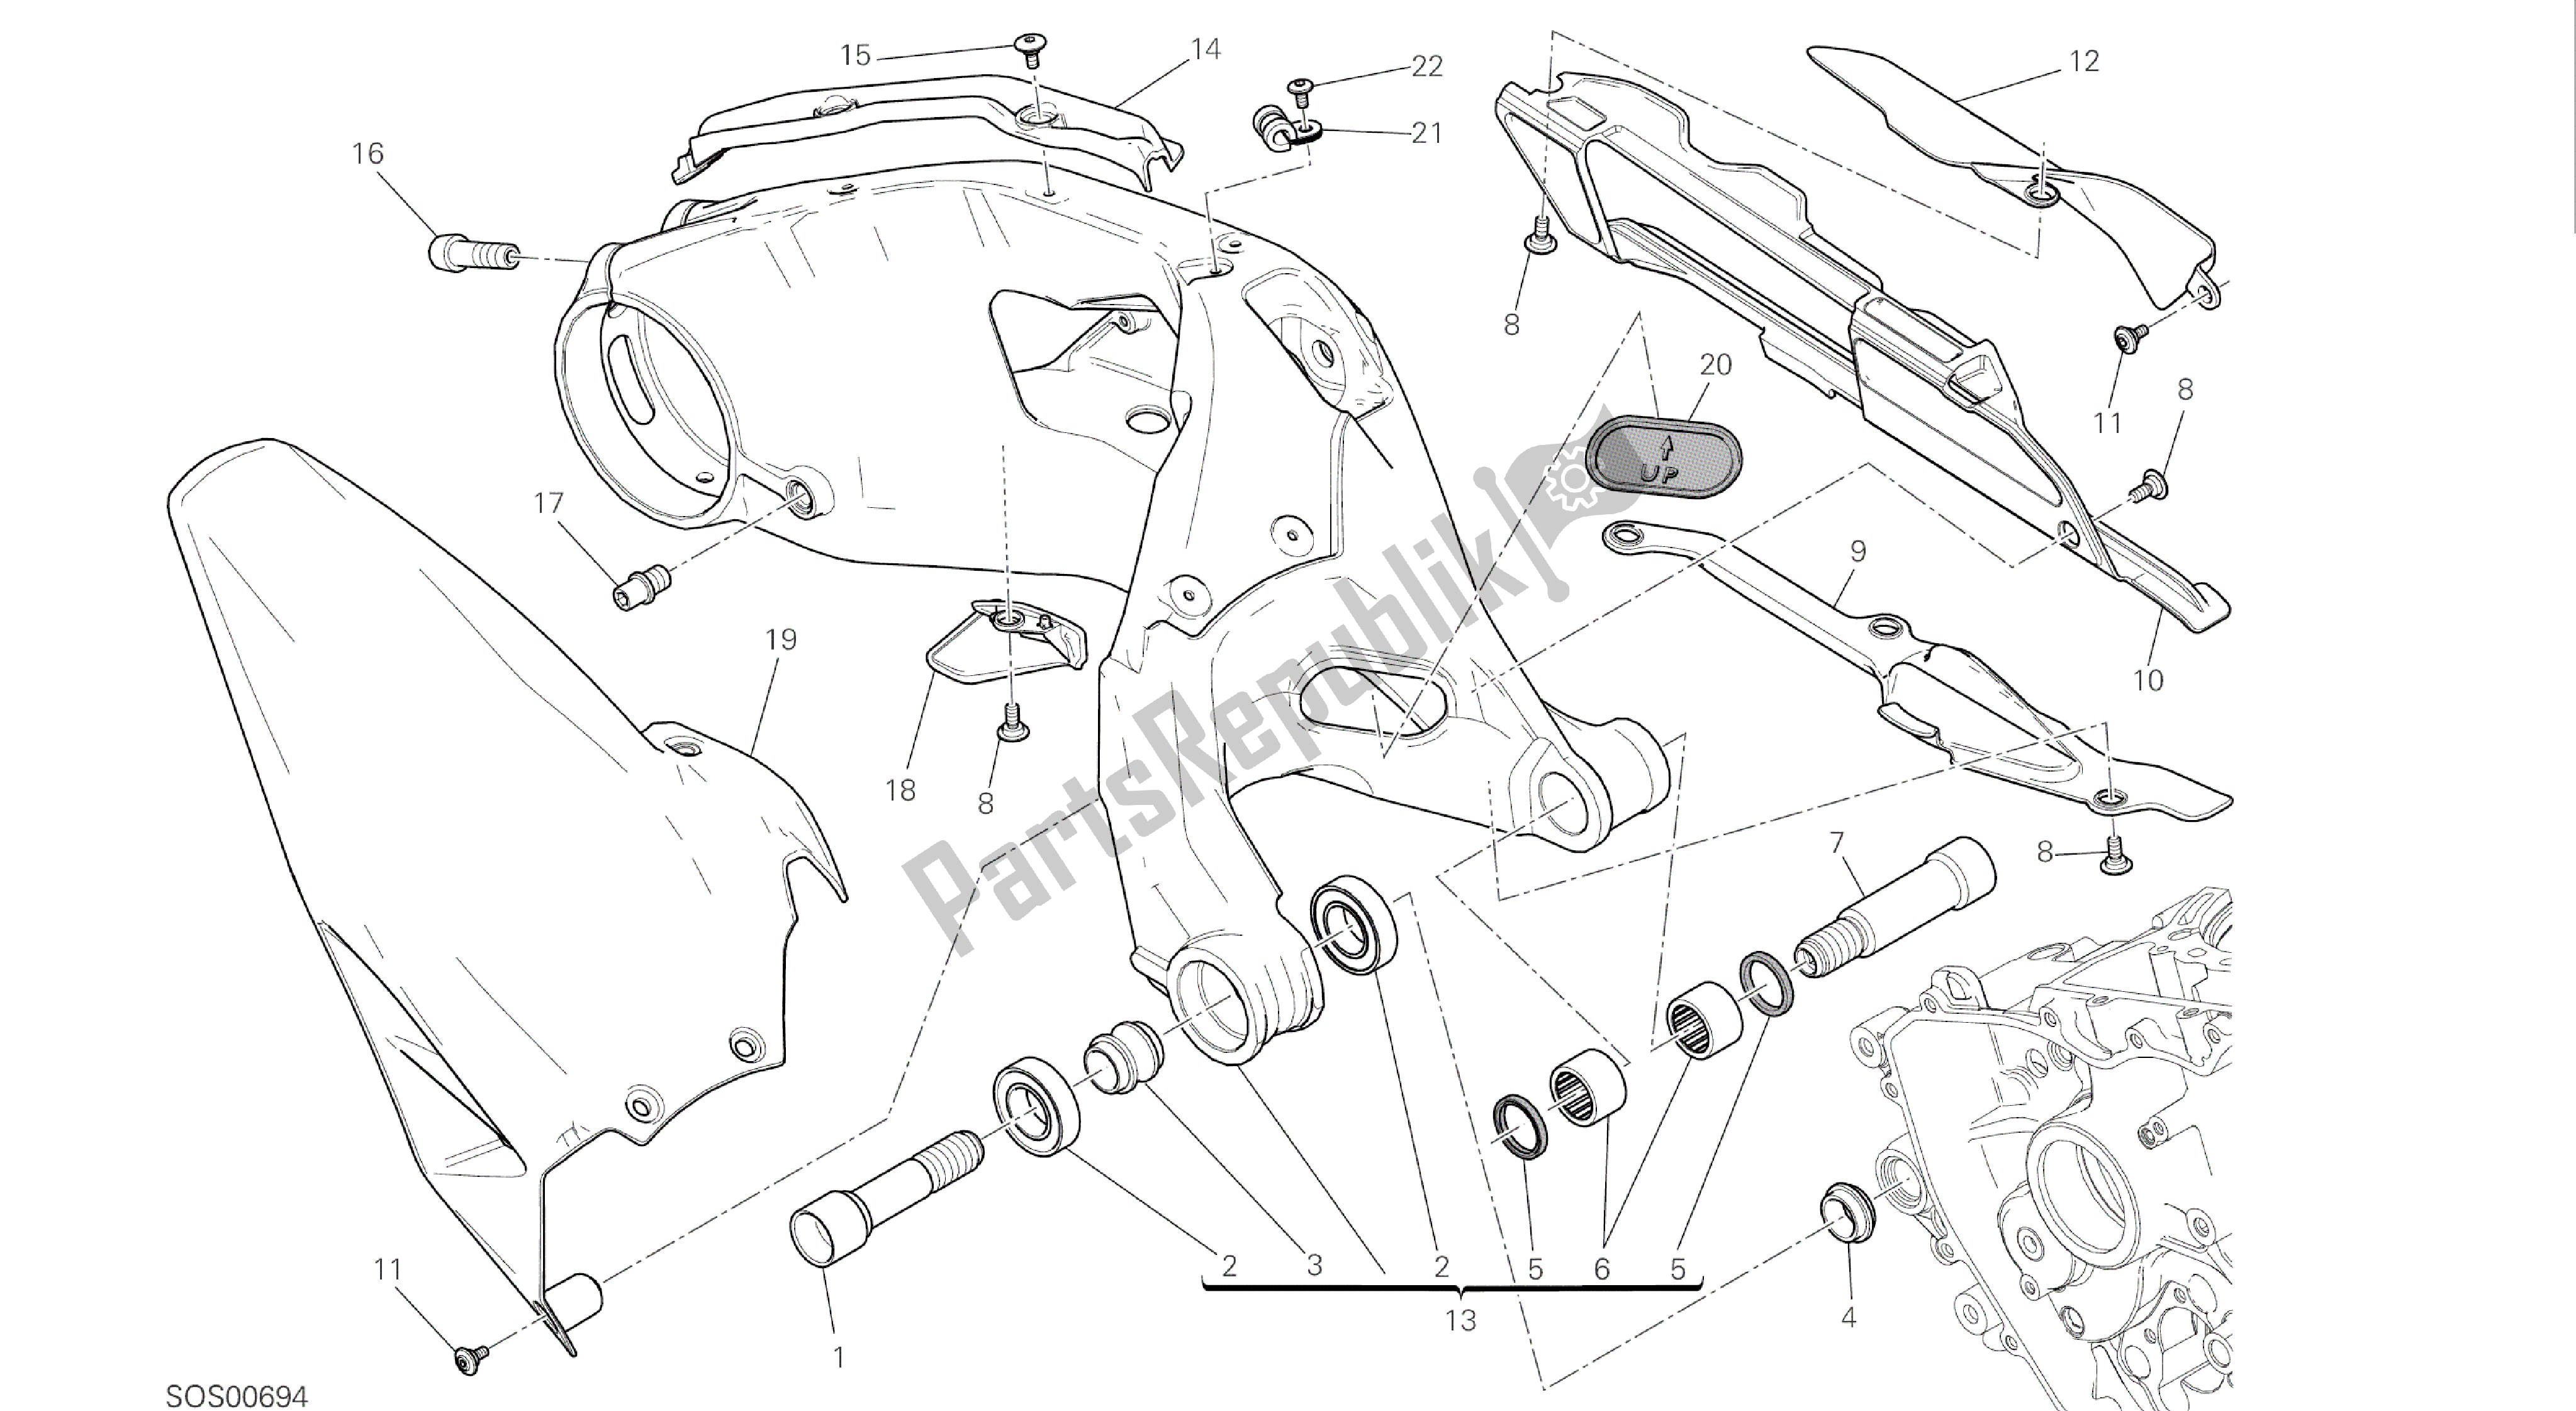 Todas las partes para Dibujo 28a - Forcellone Posteriore [mod: 1299s; Xst: Marco De Grupo Aus, Eur, Fra, Jap, Twn] de Ducati Panigale S ABS 1299 2016